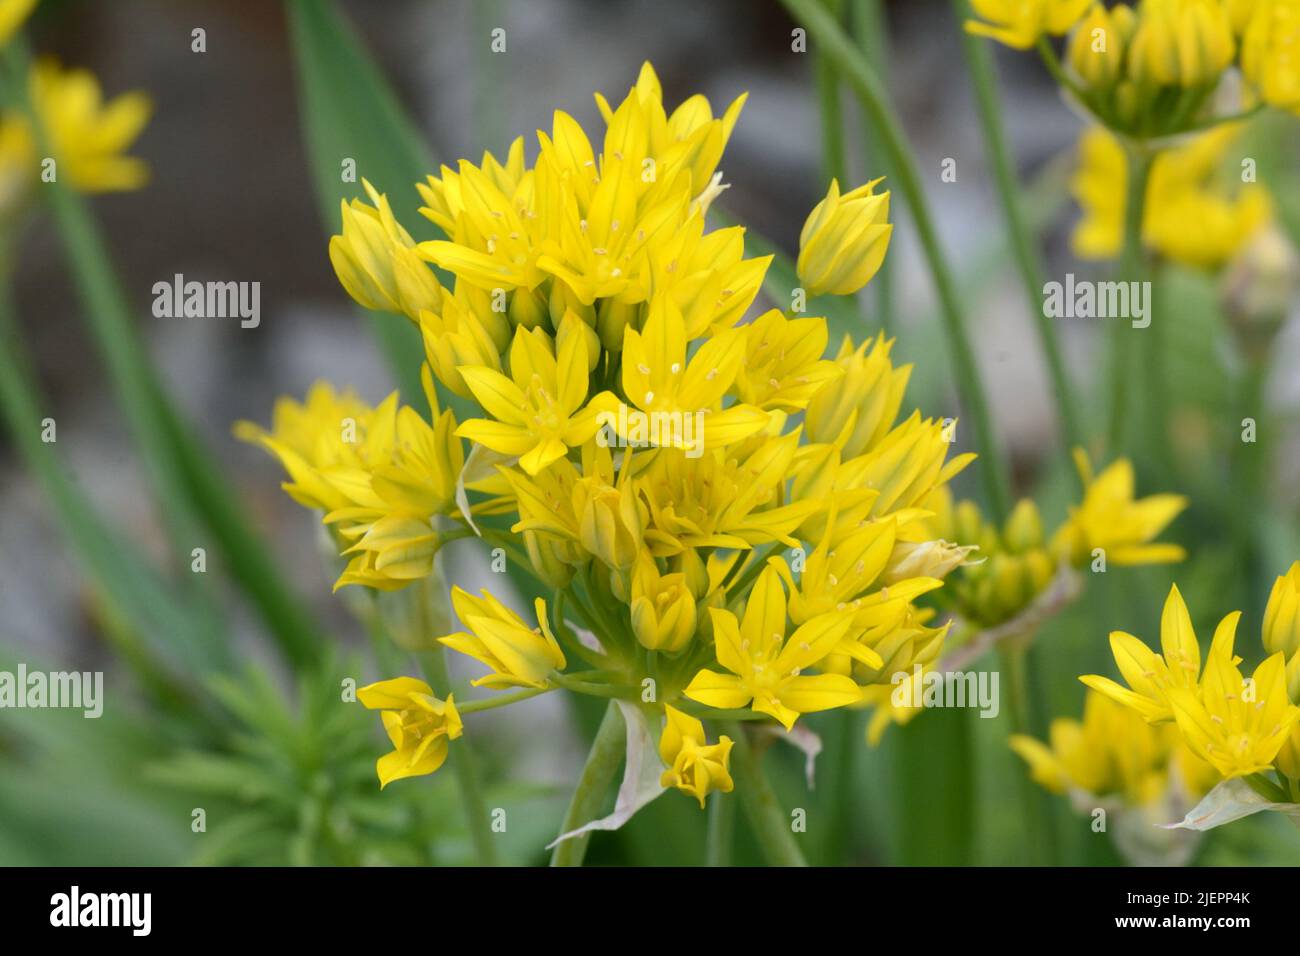 Allium Moly doré ail fleurs d'ail jaune Banque D'Images